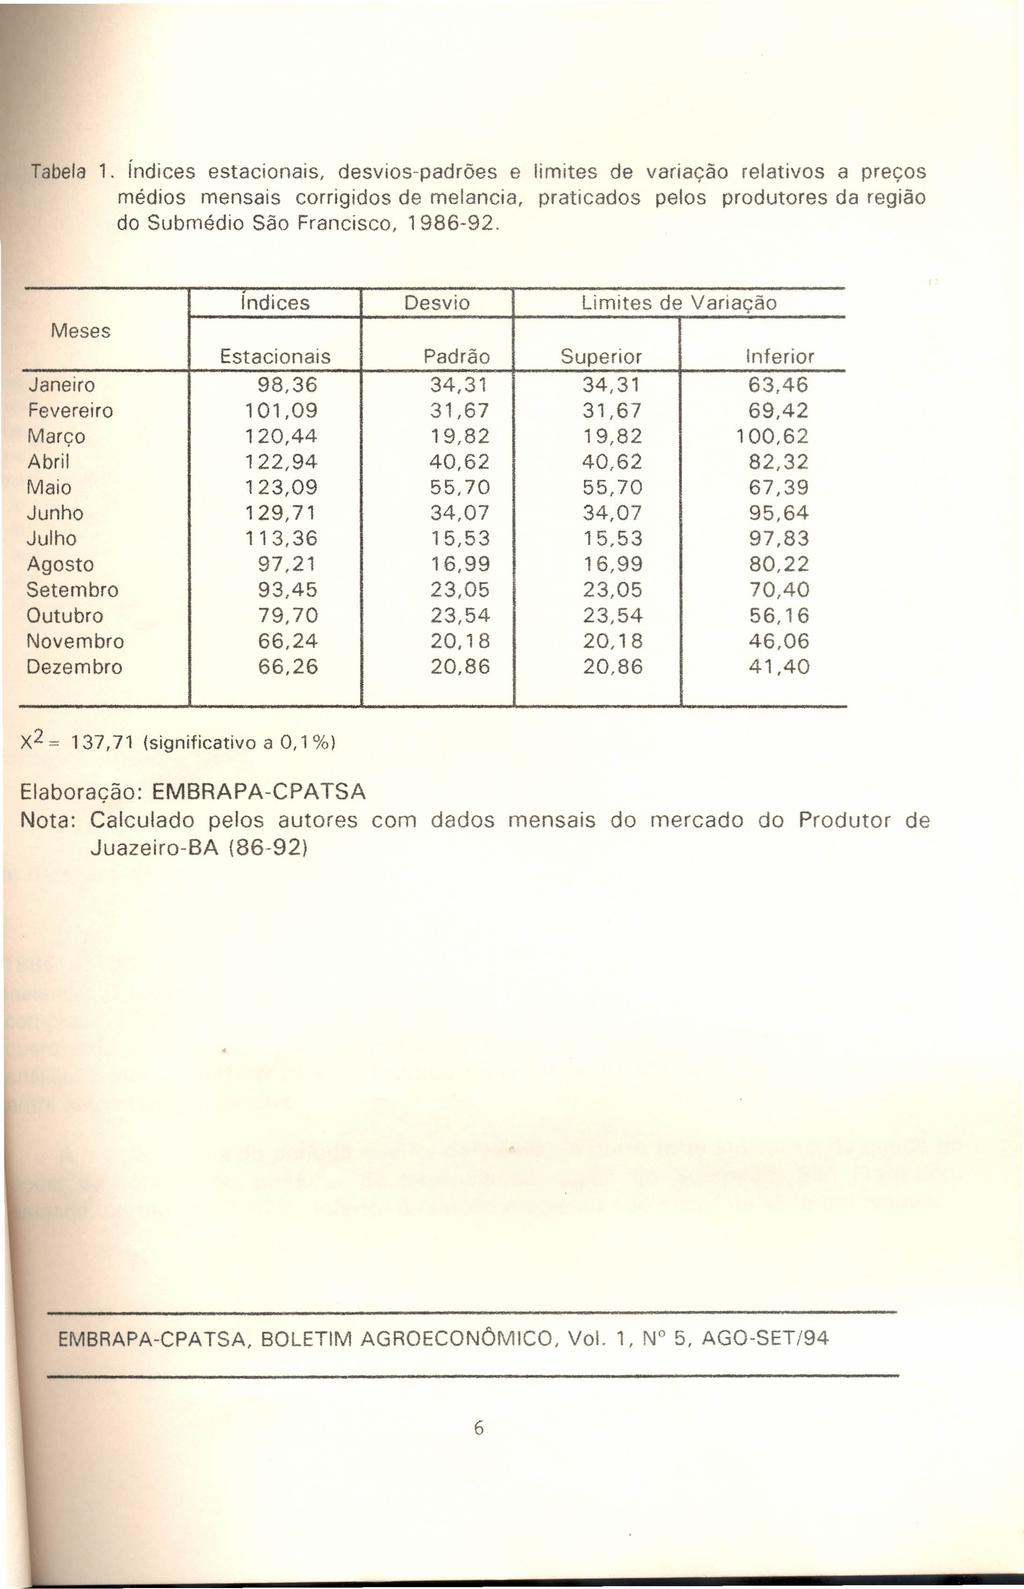 Tabela 1. índices estacionais, desvios-padrões e limites de variação relativos a preços médios mensais corrigidos de melancia, praticados pelos produtores da região do Submédio São Francisco, 1986-92.